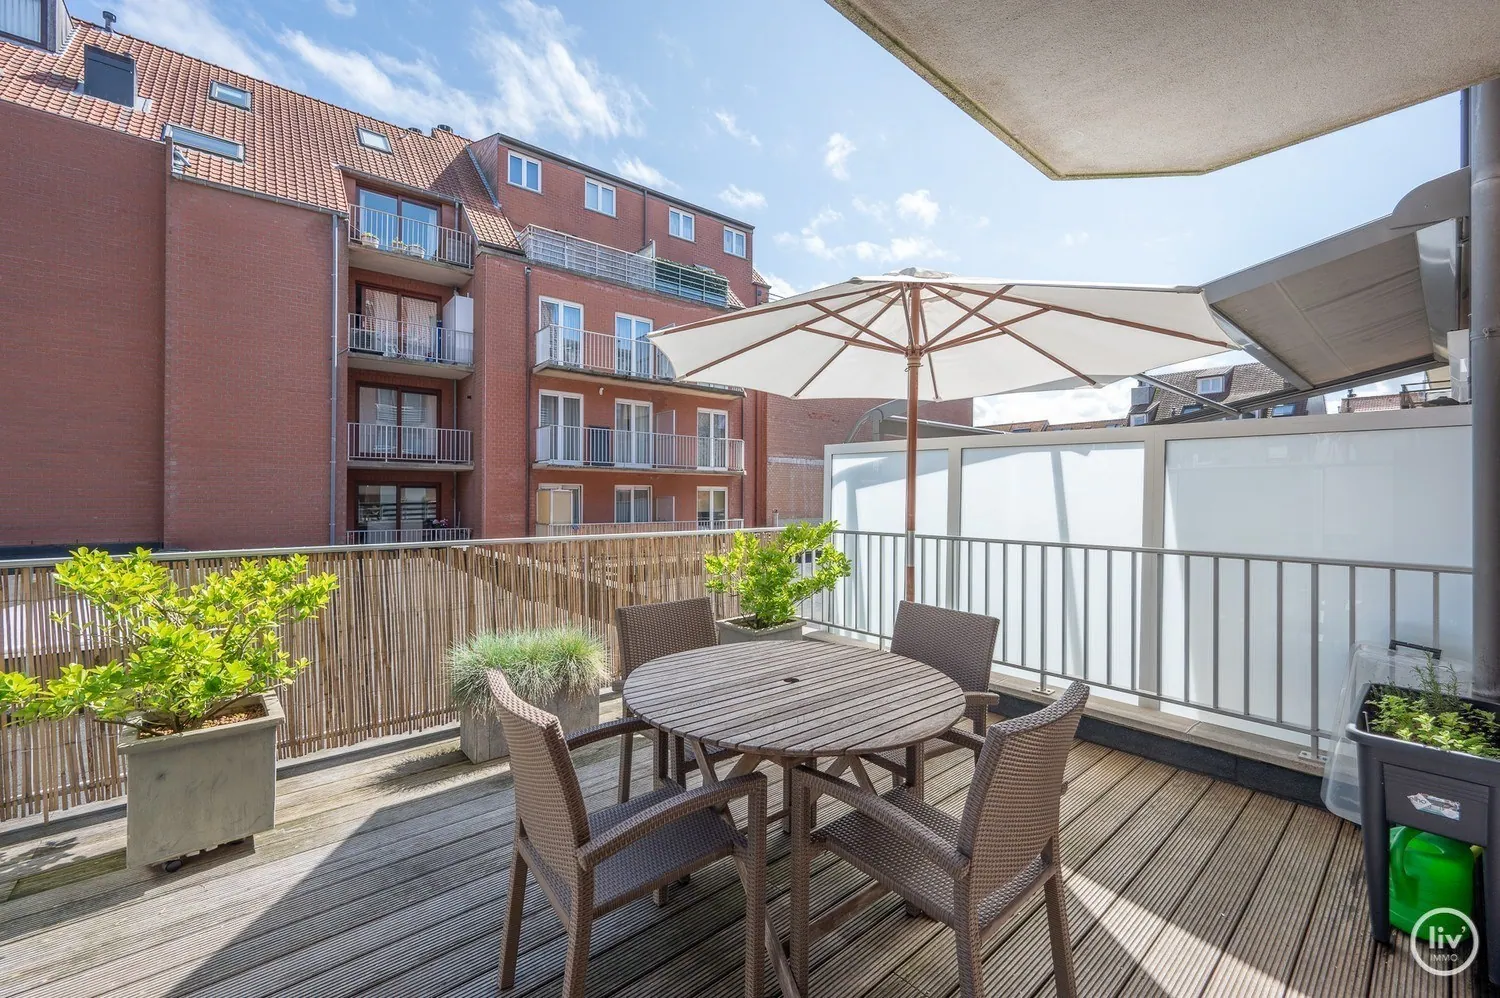 Appartement confortable de 2 chambres avec une grande terrasse à l'arrière, situé au centre près de l'avenue Lippens à Knokke.